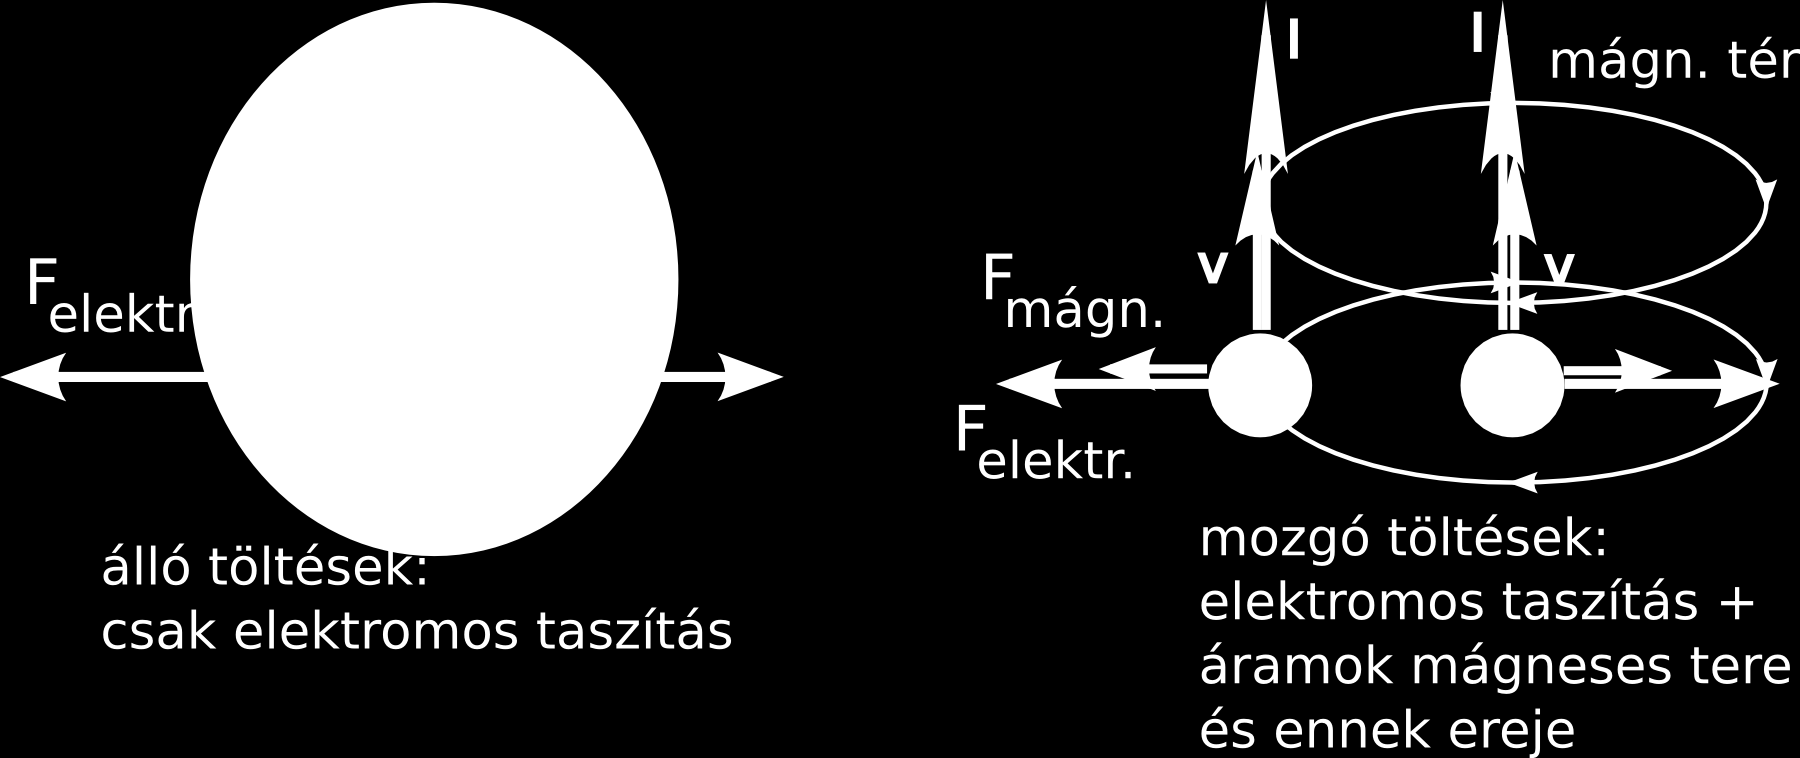 A Trouton-Noble kísérlet néhány gondolata A lényeg: a newtoni fizika és a maxwelli elektrodinamika együtt furcsa eredményt ad, ha két